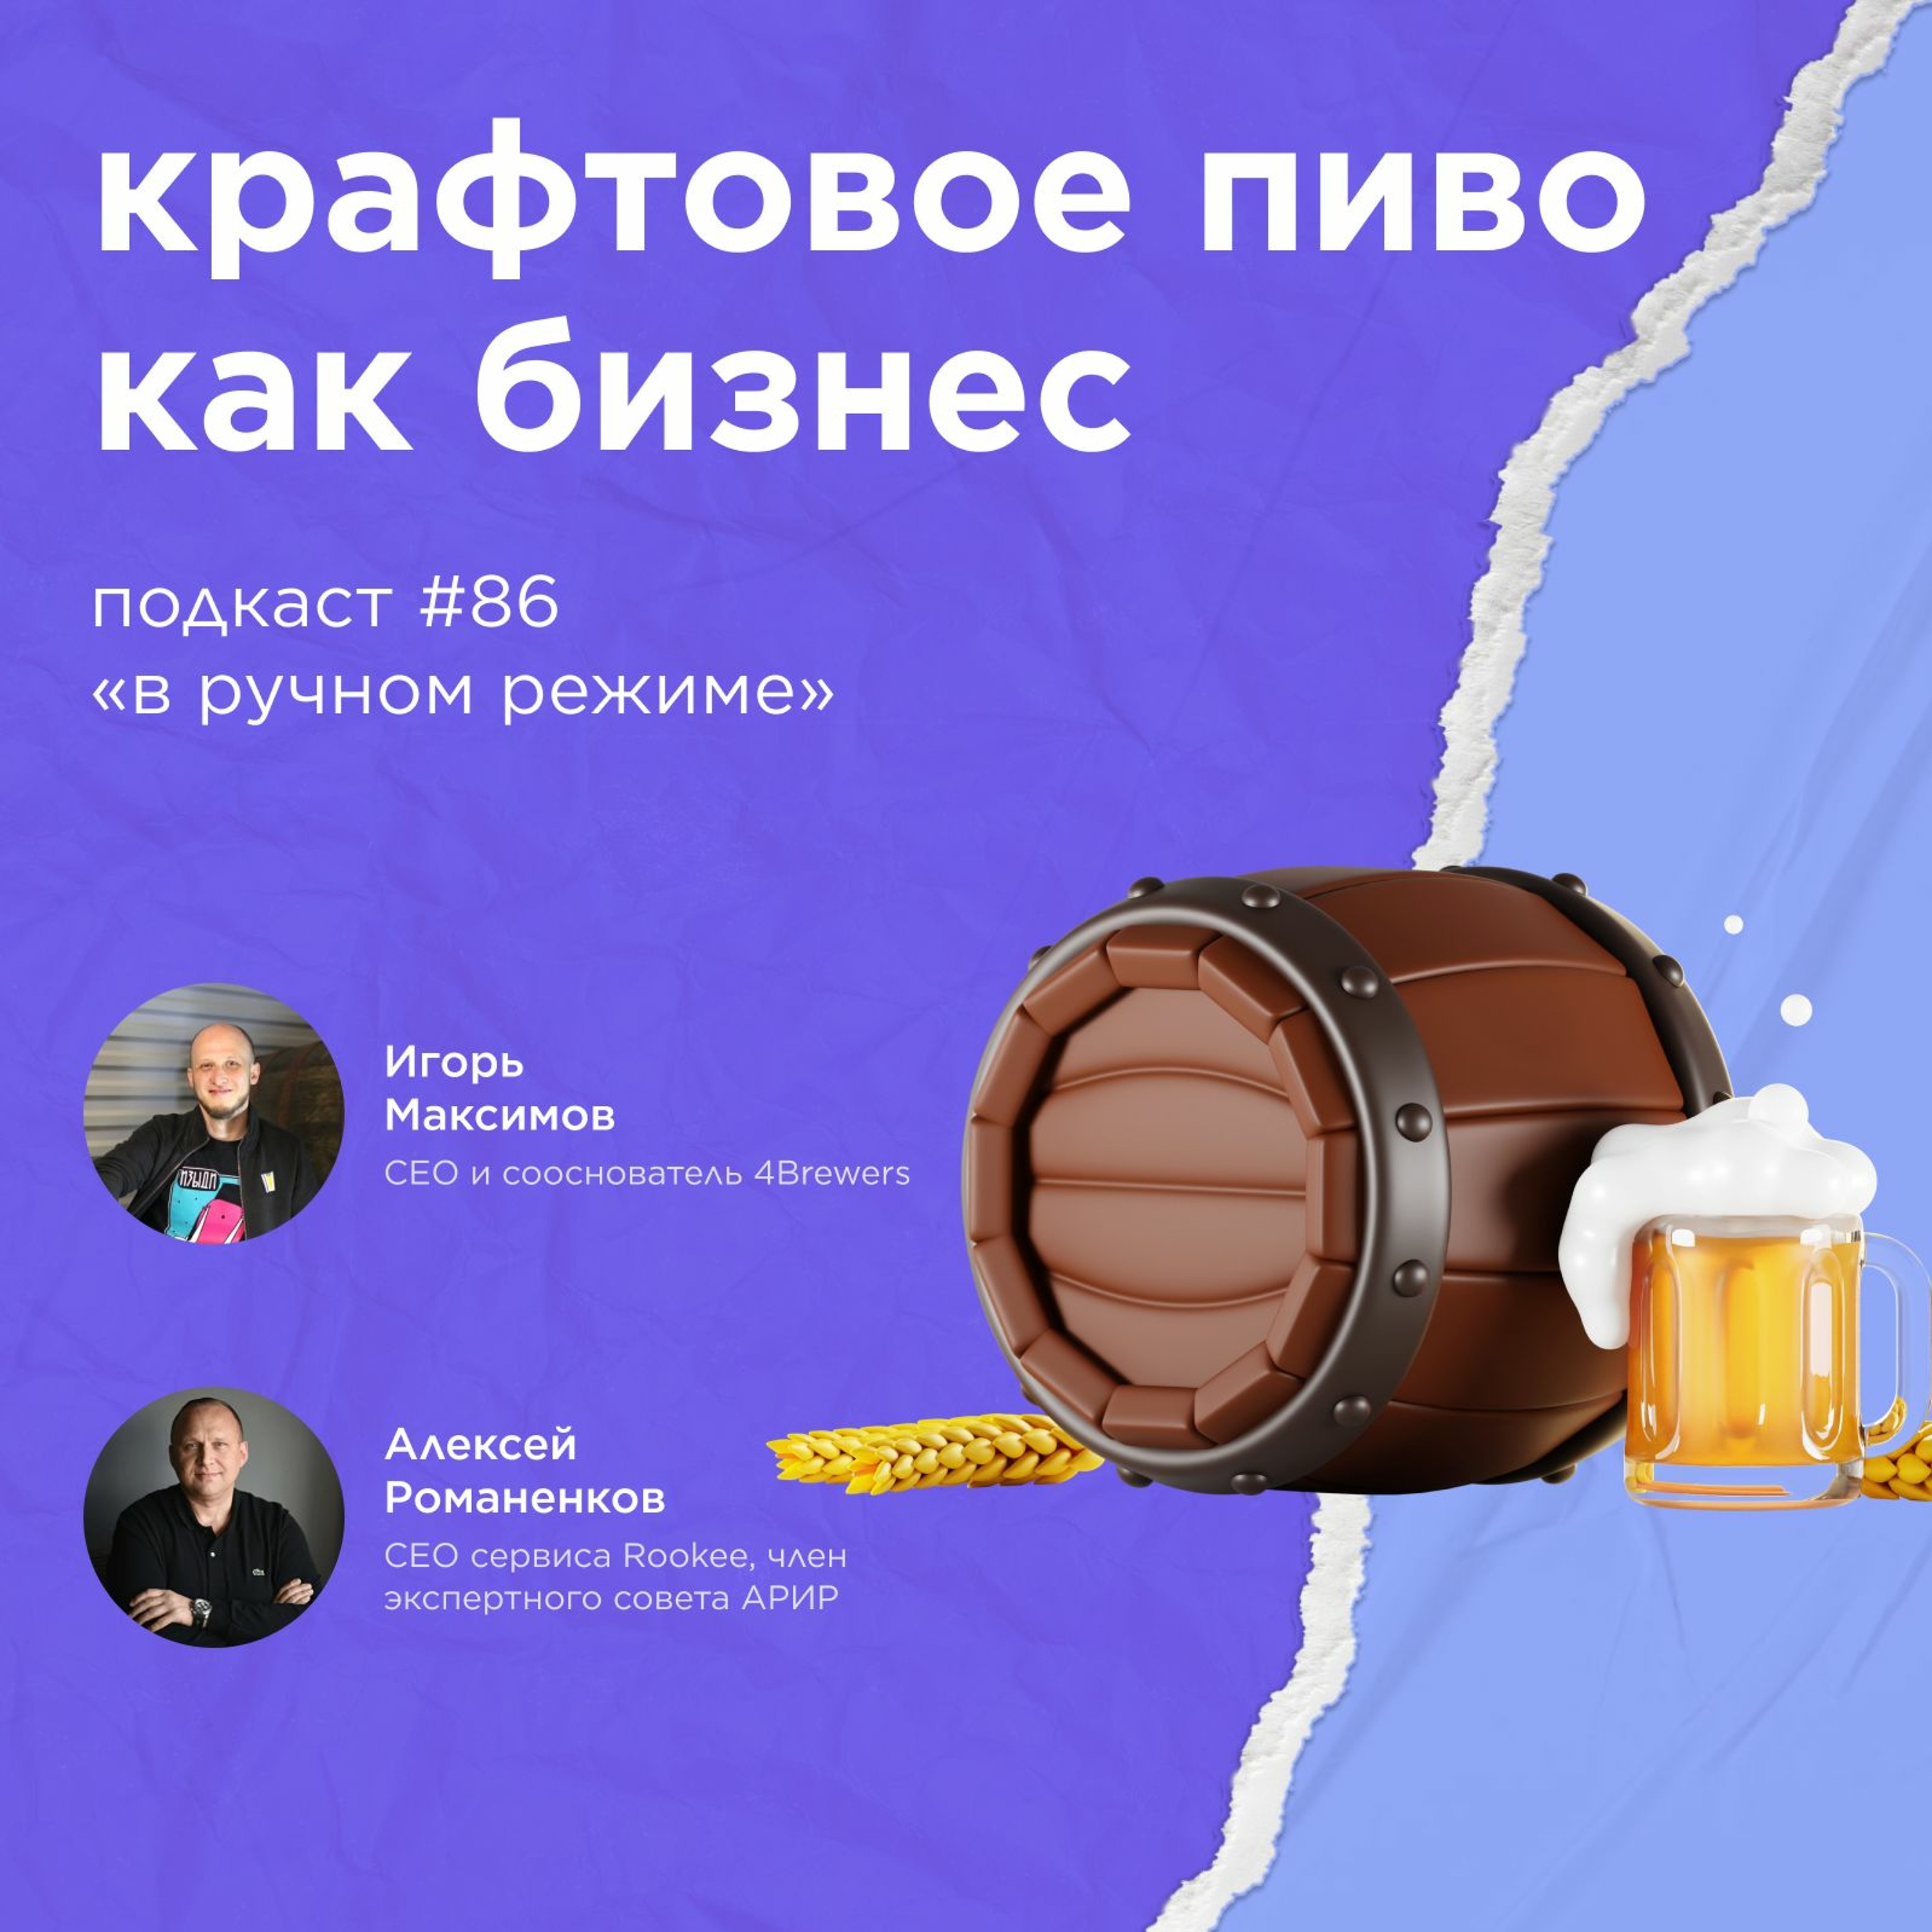 Крафтовое пиво как бизнес / Игорь Максимов, 4Brewers #vol86 / Подкаст «В ручном режиме»